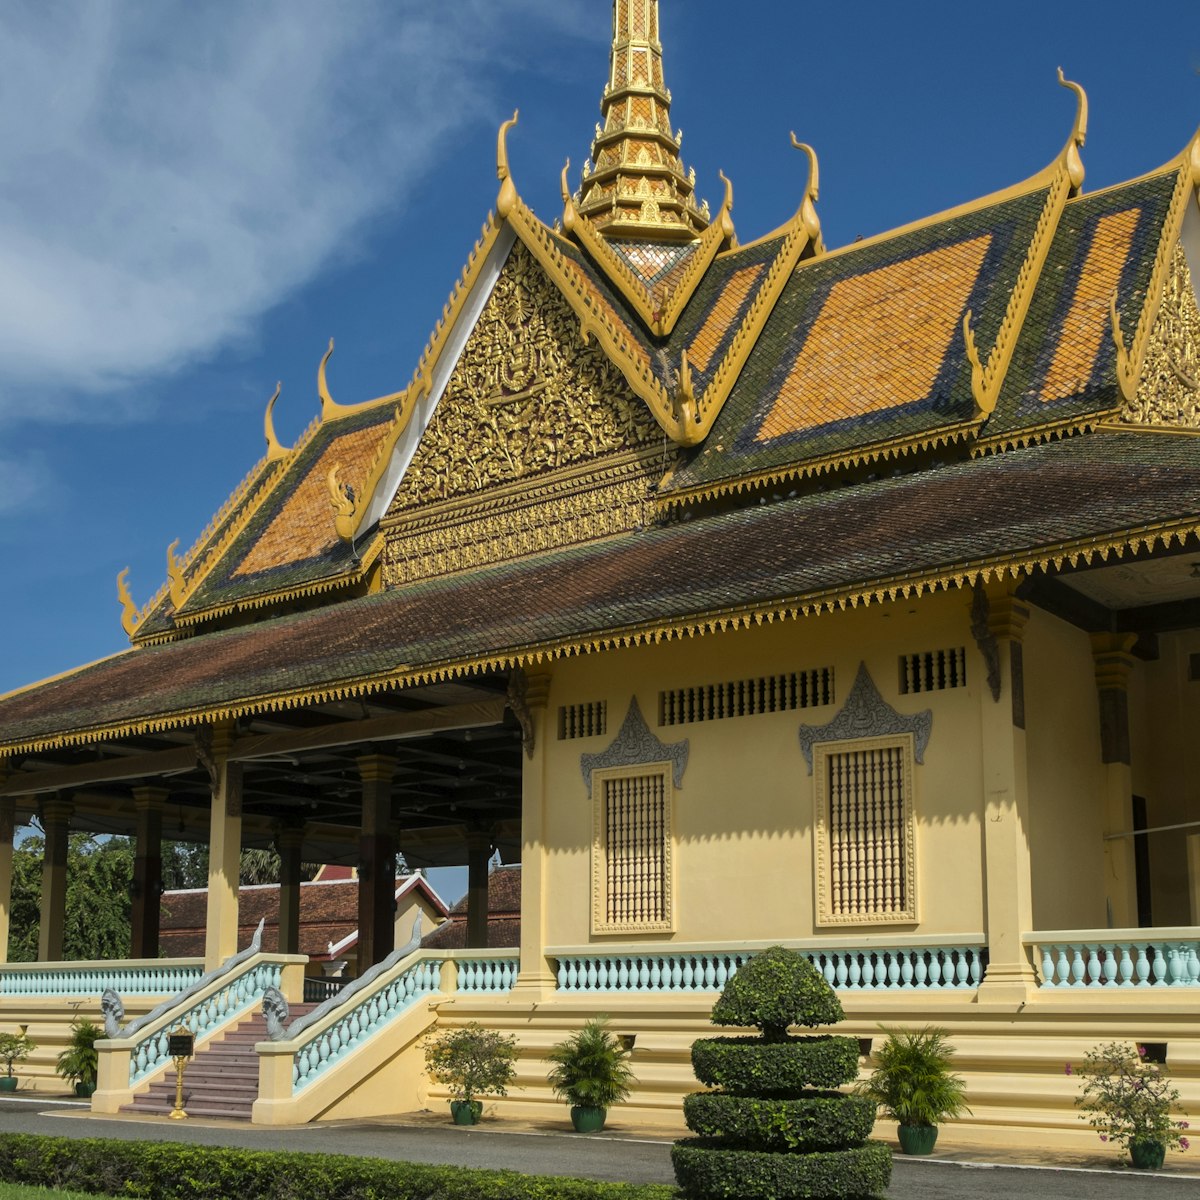 Royal Palace of Cambodia and courtyard, Phom Penh, Cambodia